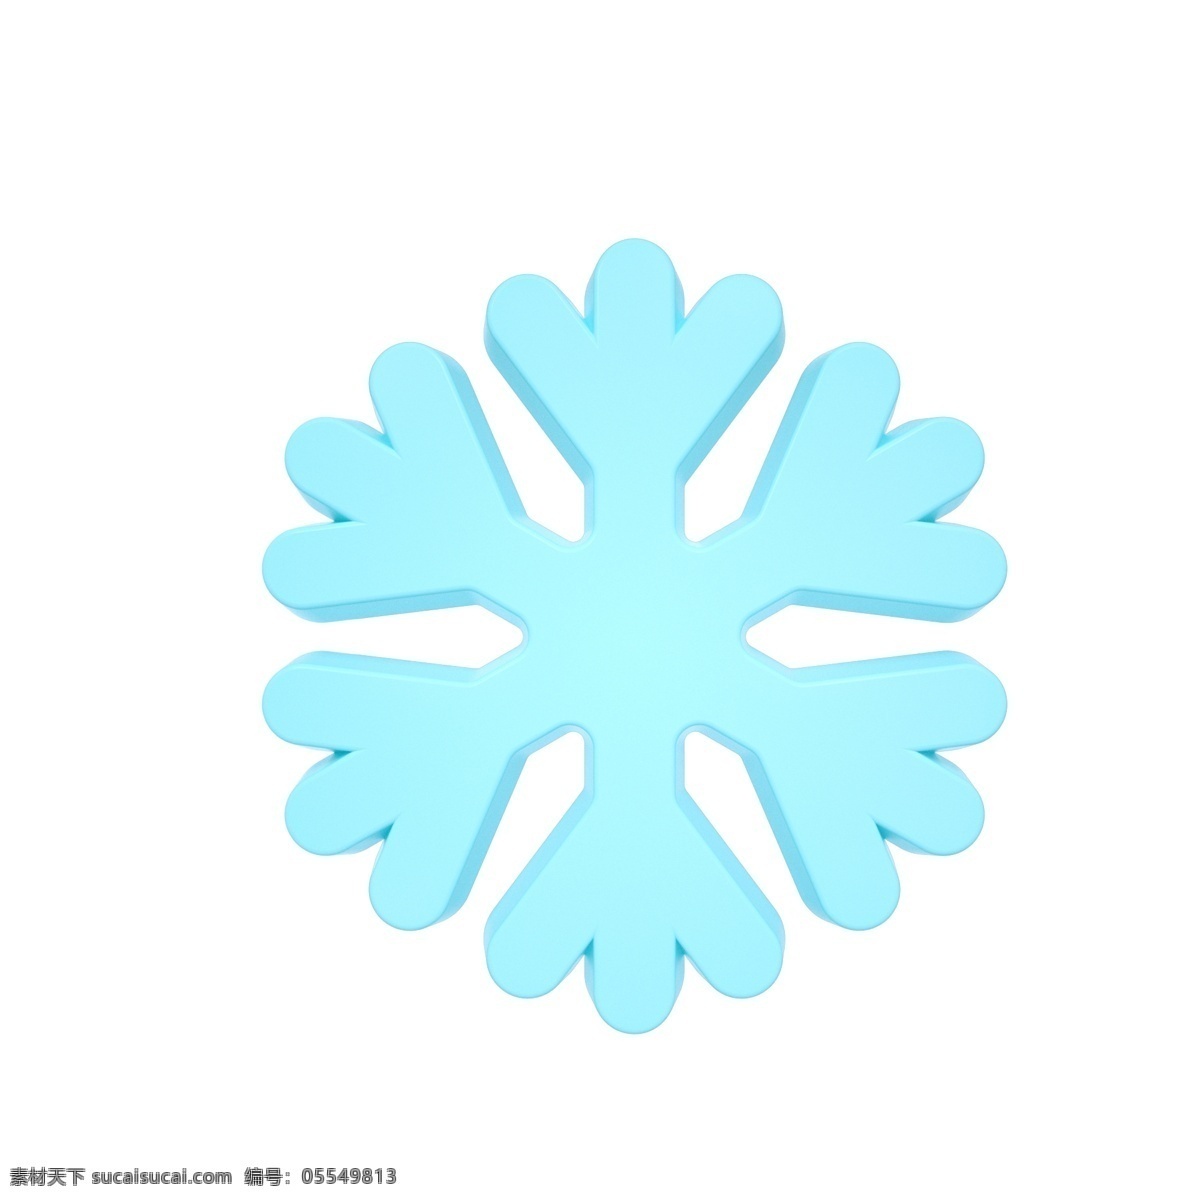 柔 色 天气 类 立体 图标 雪花 c4d 3d 柔色 青色 天气类图标 通用图标装饰 可爱 常用